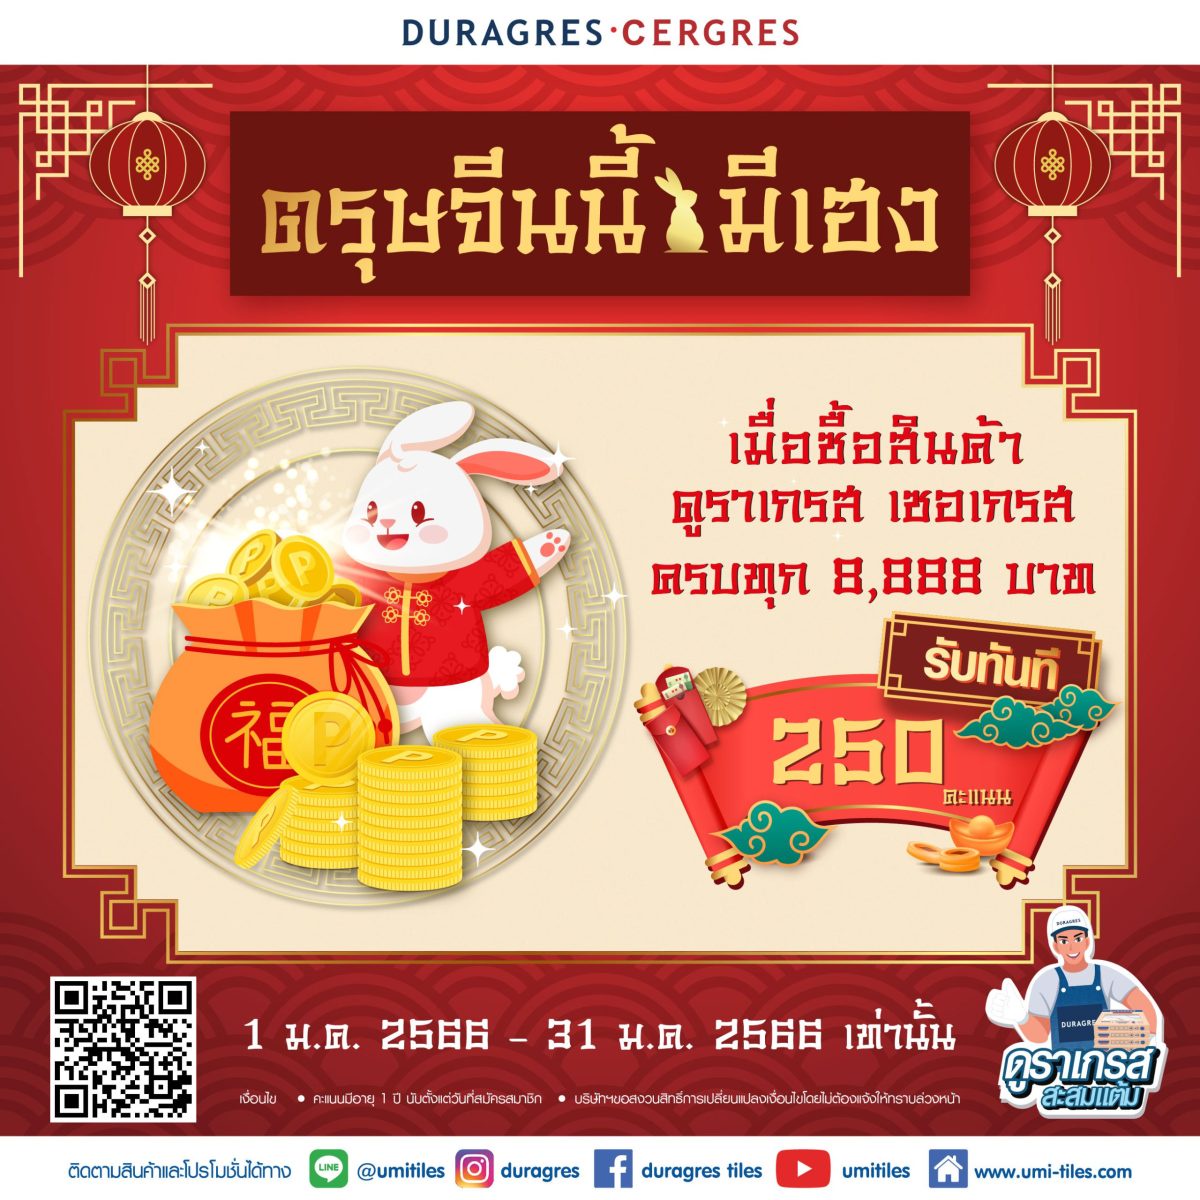 UMI จัดโปรฯ เด็ด ต้อนรับปีกระต่าย กับเทศกาลมงคล ตรุษจีนนี้ มีเฮง ช้อปครบทุก 8,888 บาท รับทันที 250 คะแนน